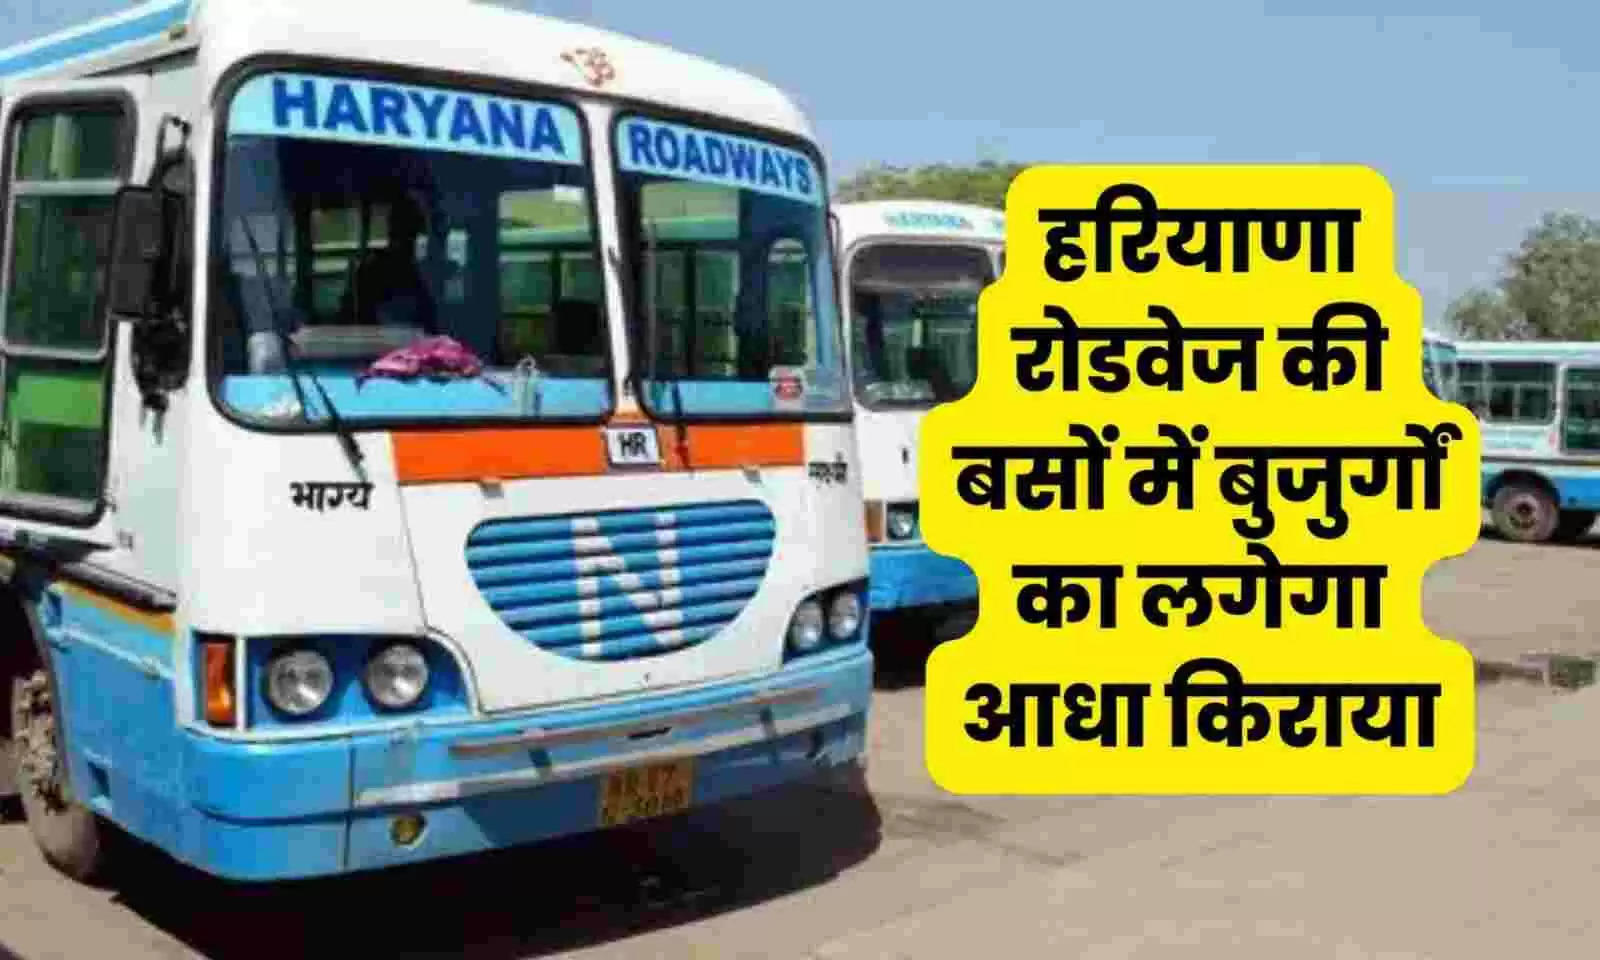 Haryana News: हरियाणा में बुजुर्गो की मौज, रोडवेज में लगेगी आधी टिकिट, बस दिखाना होगा ये कागज़